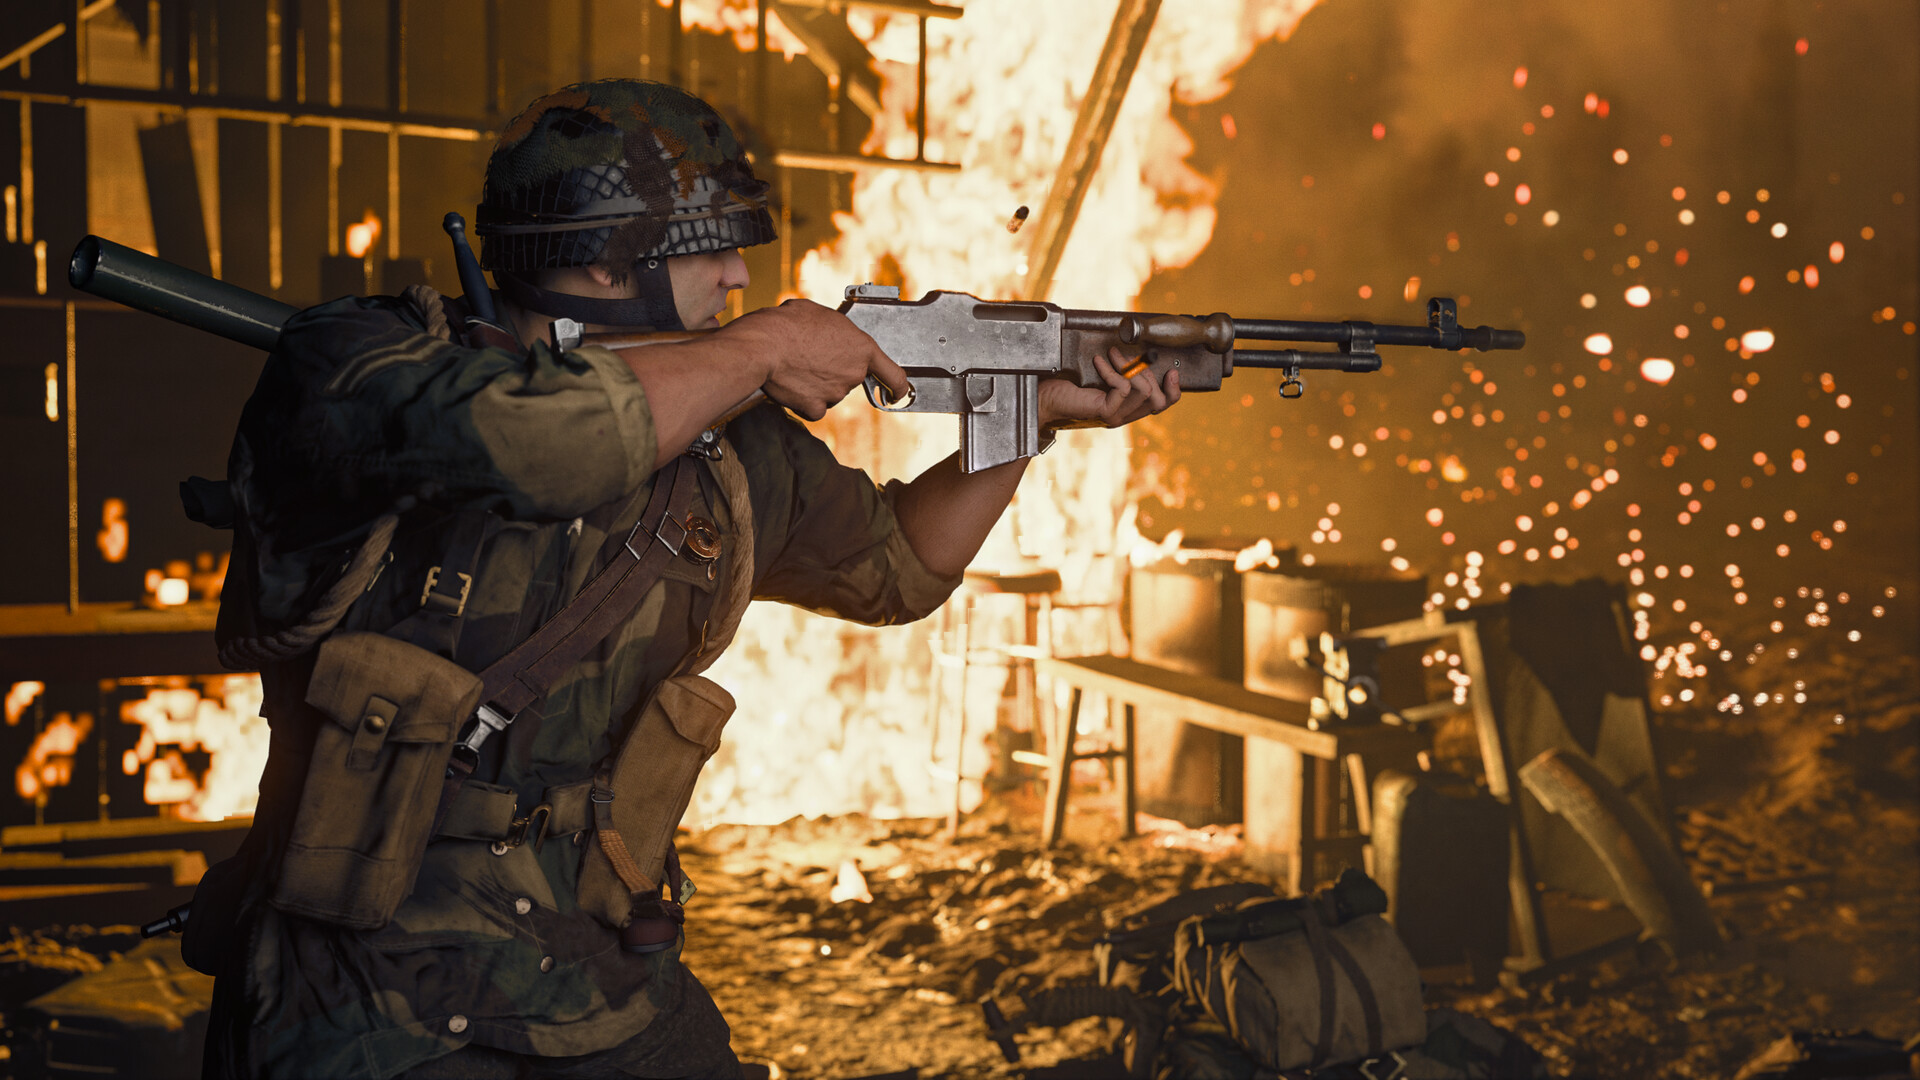 Antalet sålda exemplar av Call of Duty: Vanguard överstiger 30 miljoner